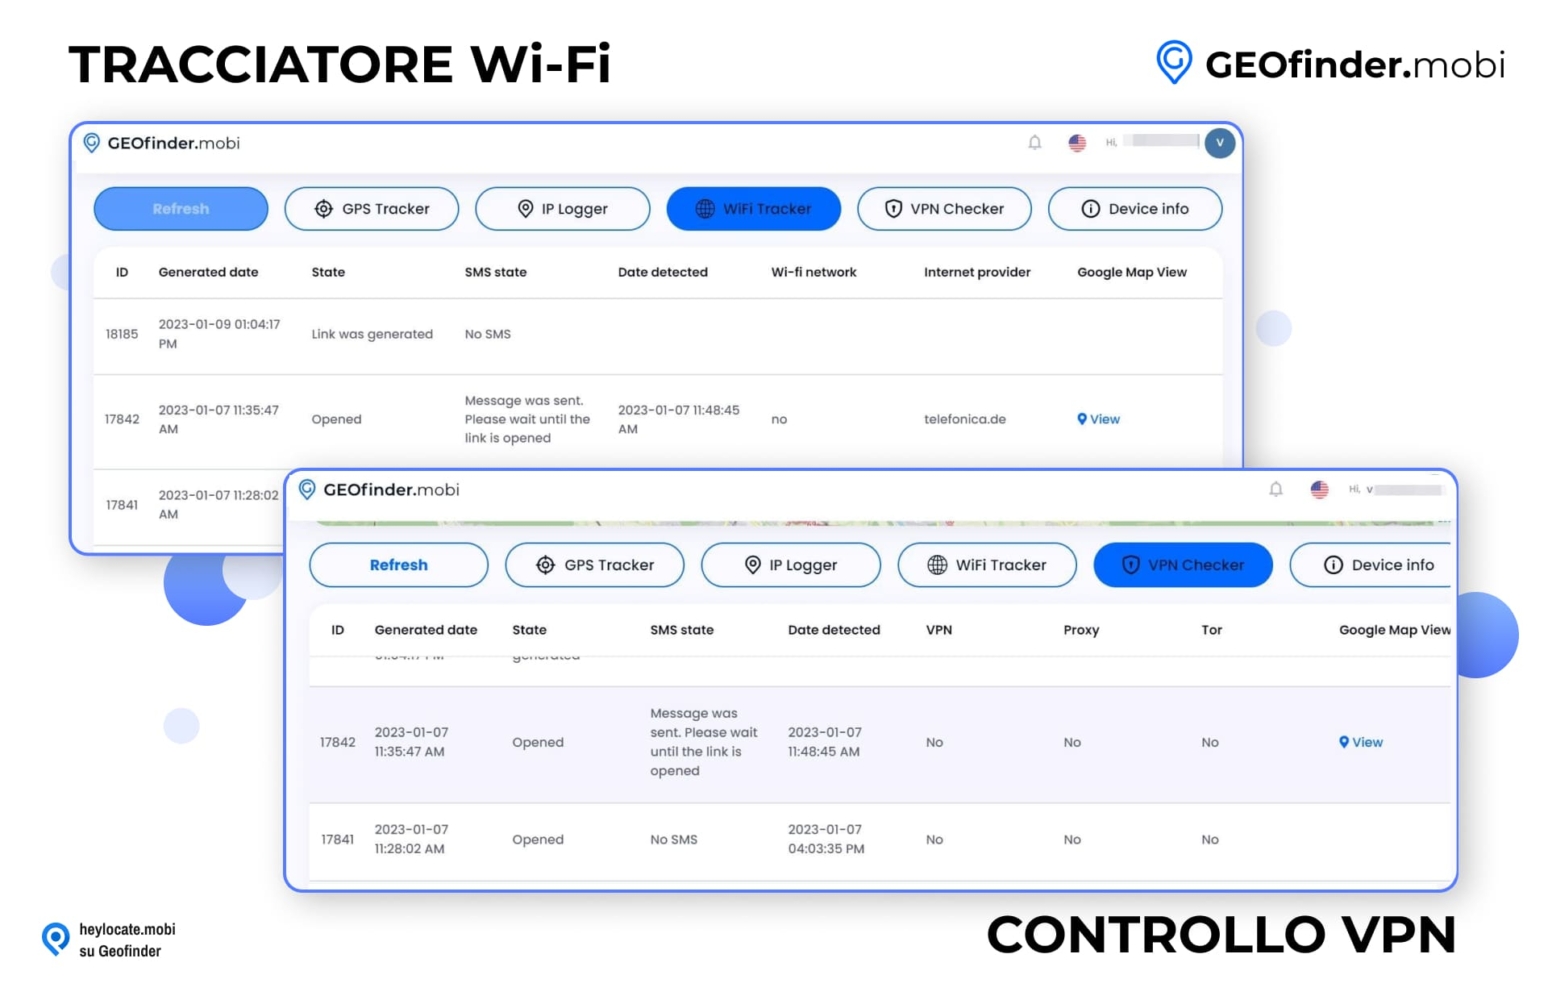 Interfaccia di GEOfinder.mobi che mostra le schede WiFi Tracker e VPN Checker, con elenchi dettagliati di numeri ID, date, stati degli SMS, data di rilevamento e informazioni sulla rete a scopo di tracciamento.